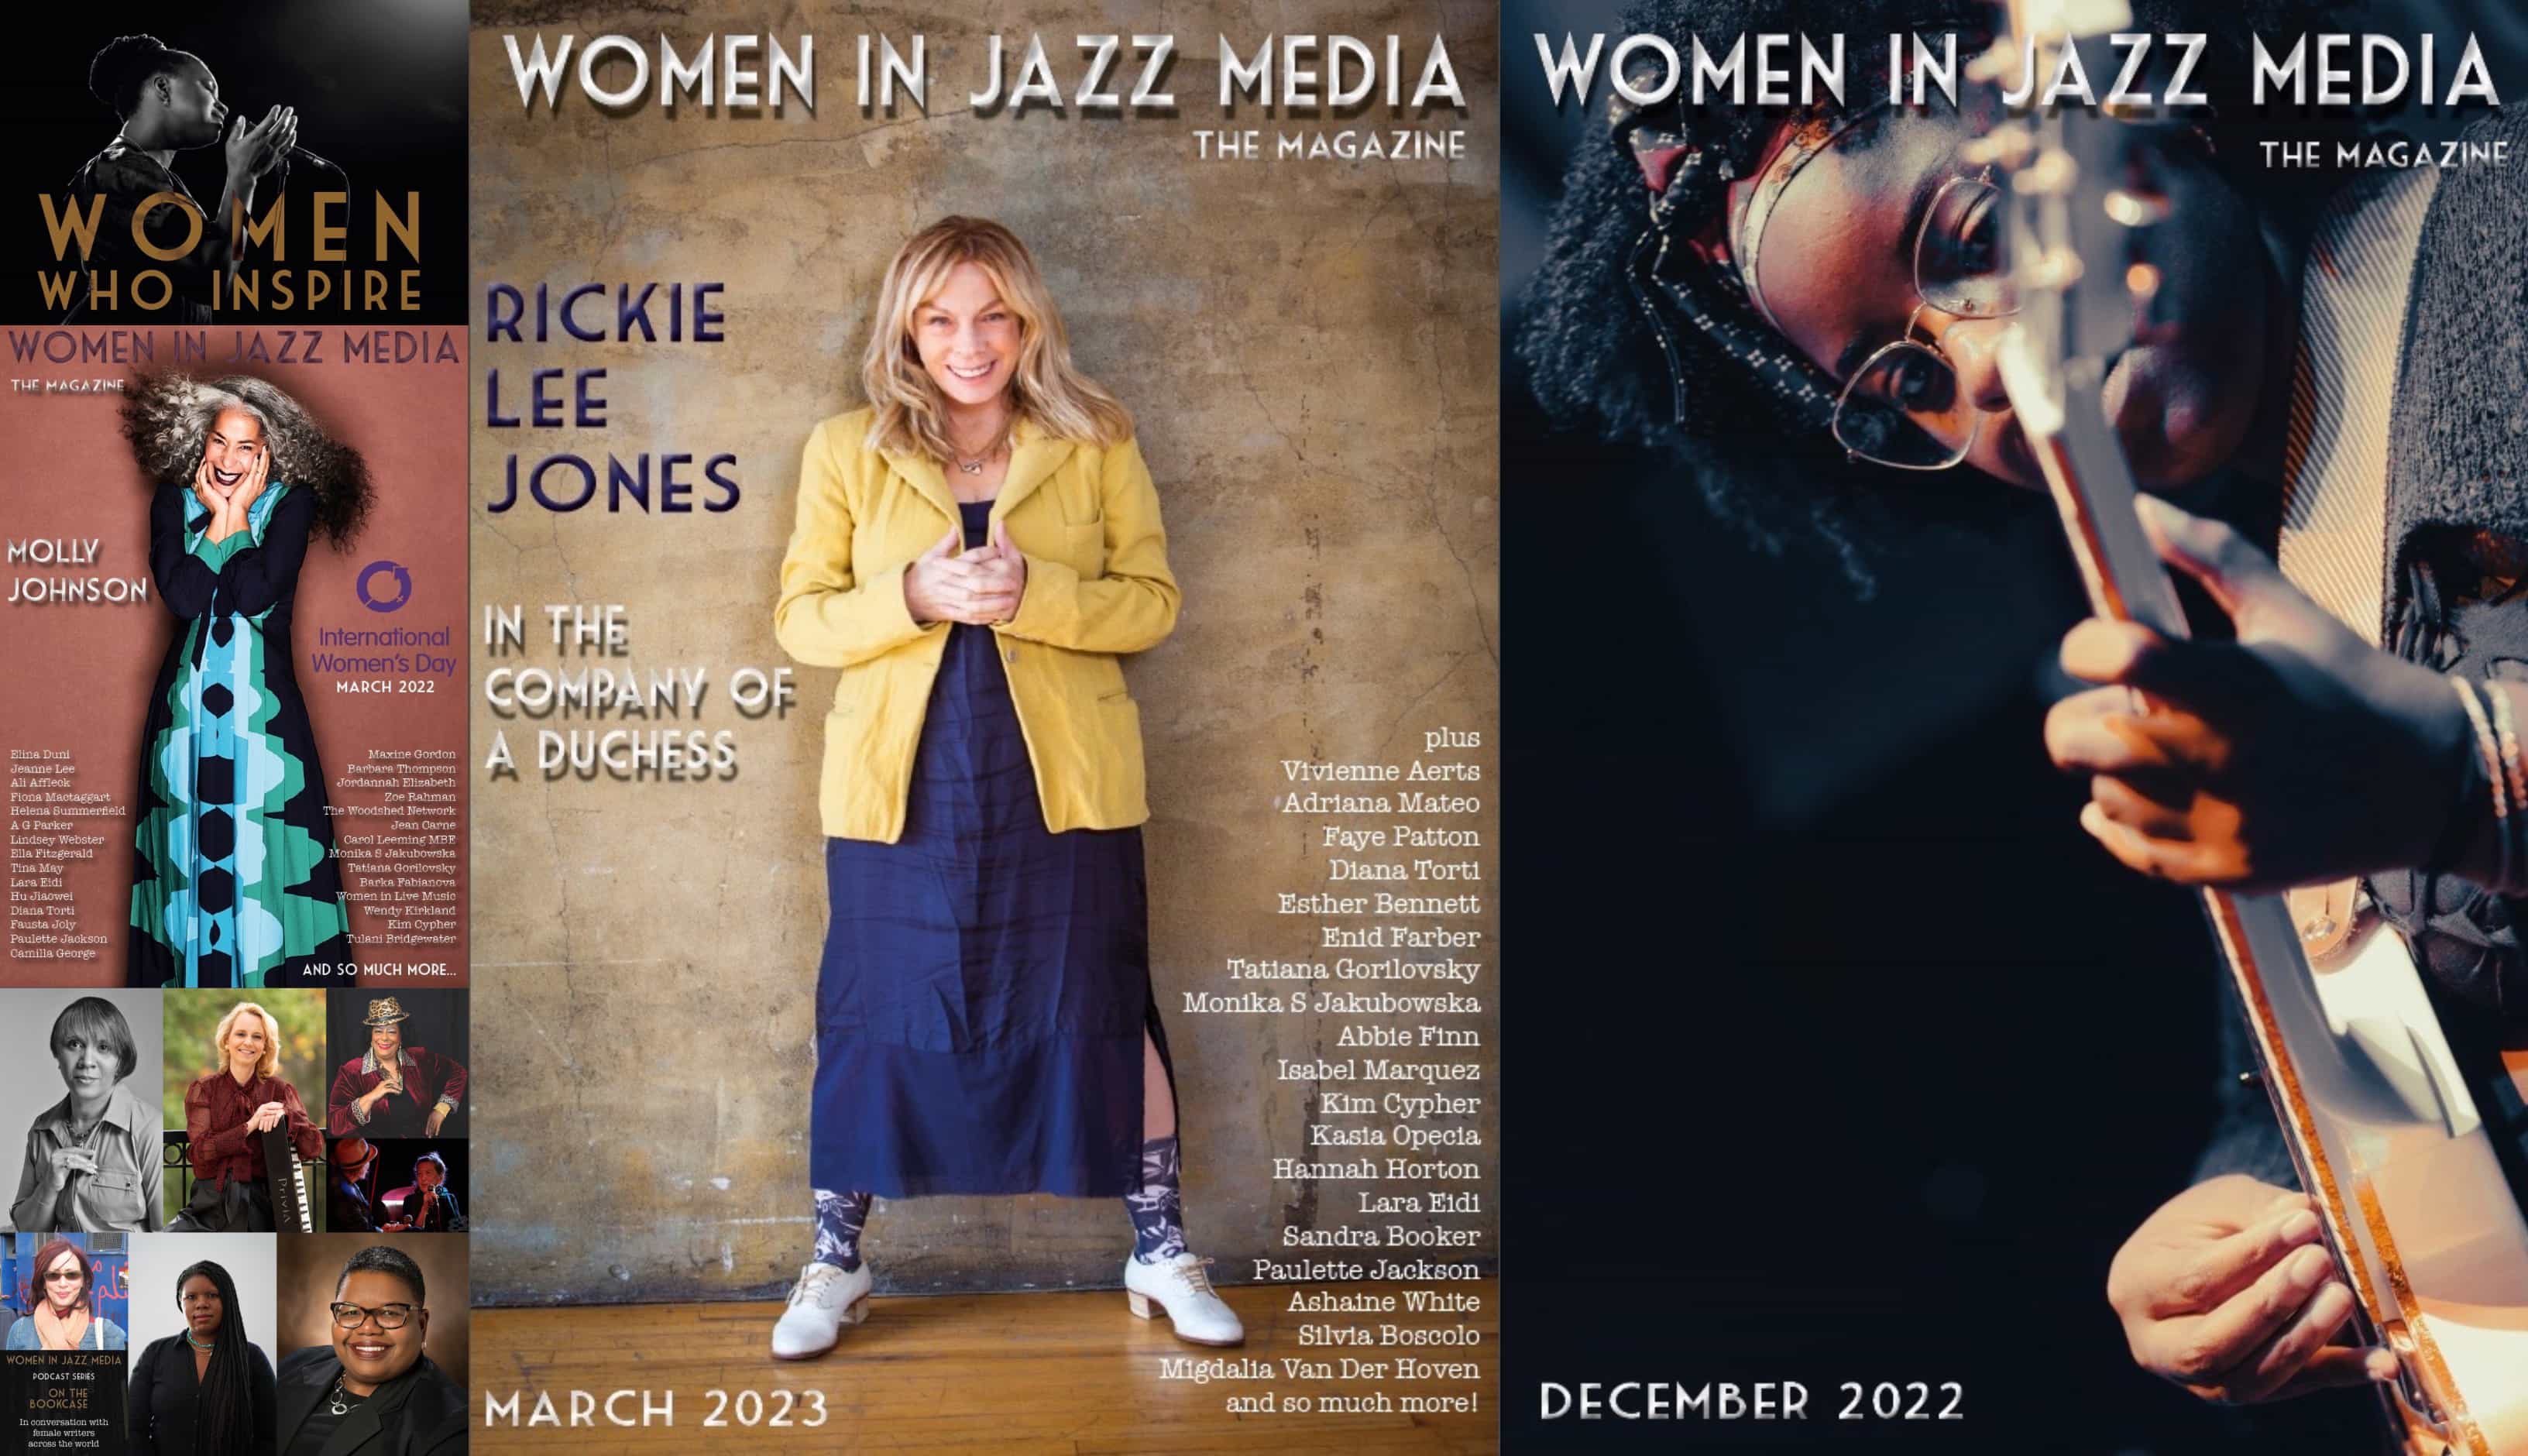 Women in Jazz Media